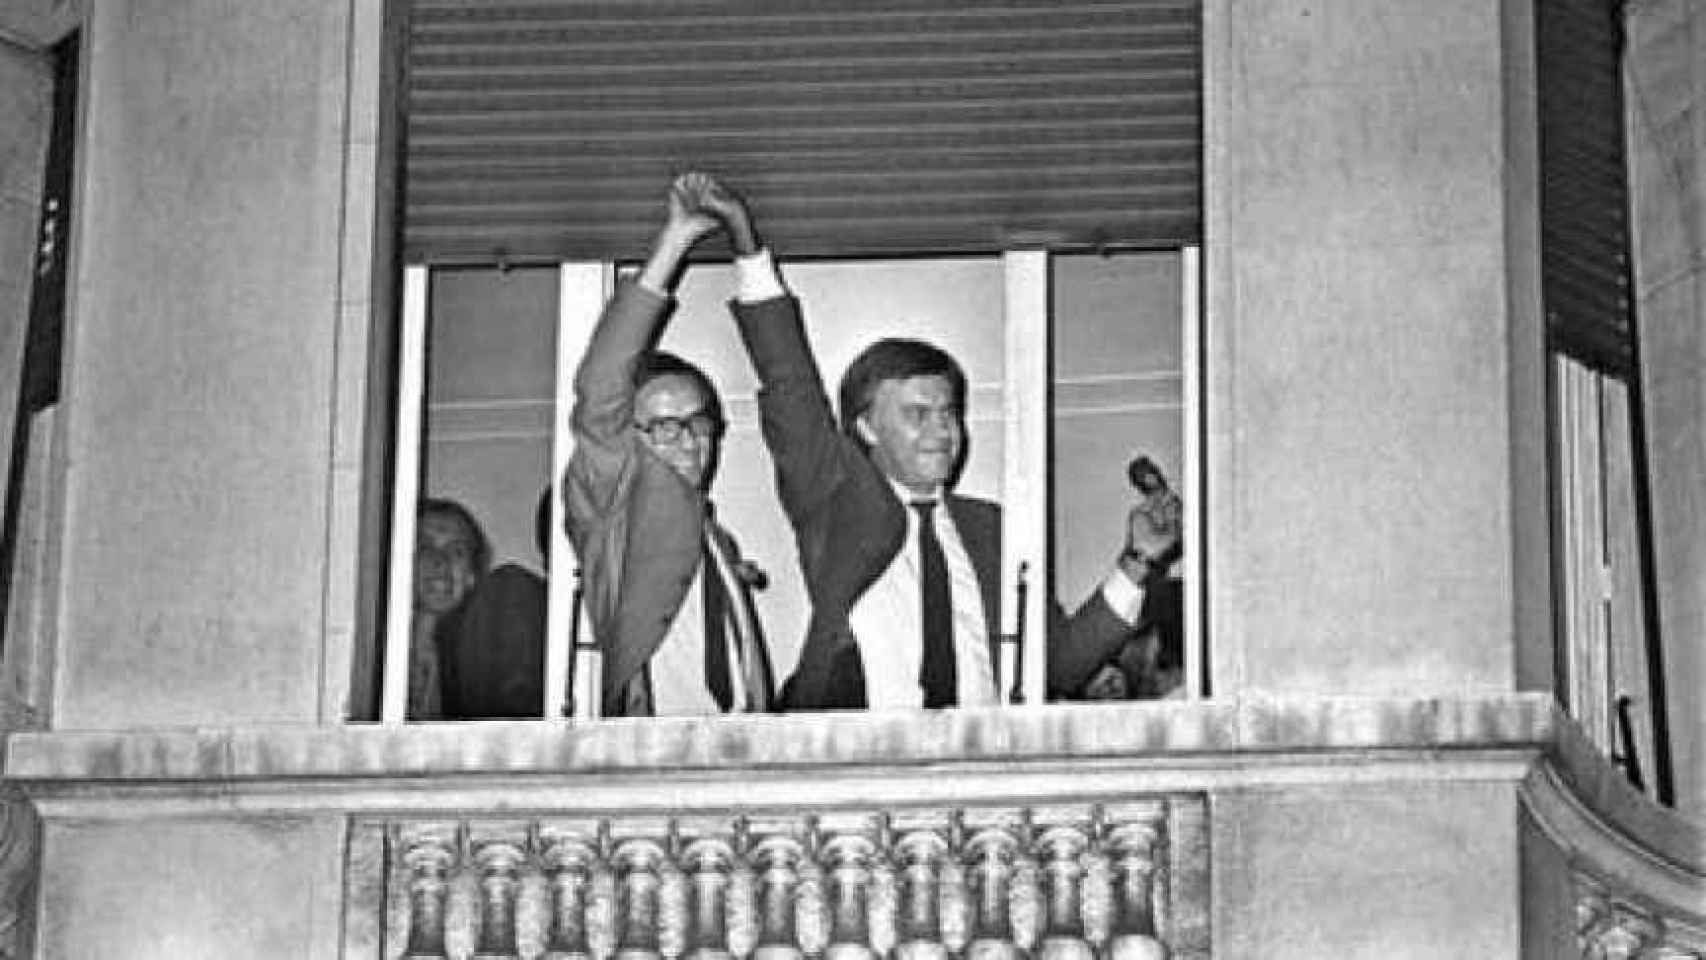 Felipe González y Alfonso Guerra celebran la victoria del 82 en una ventana del hotel Palace.